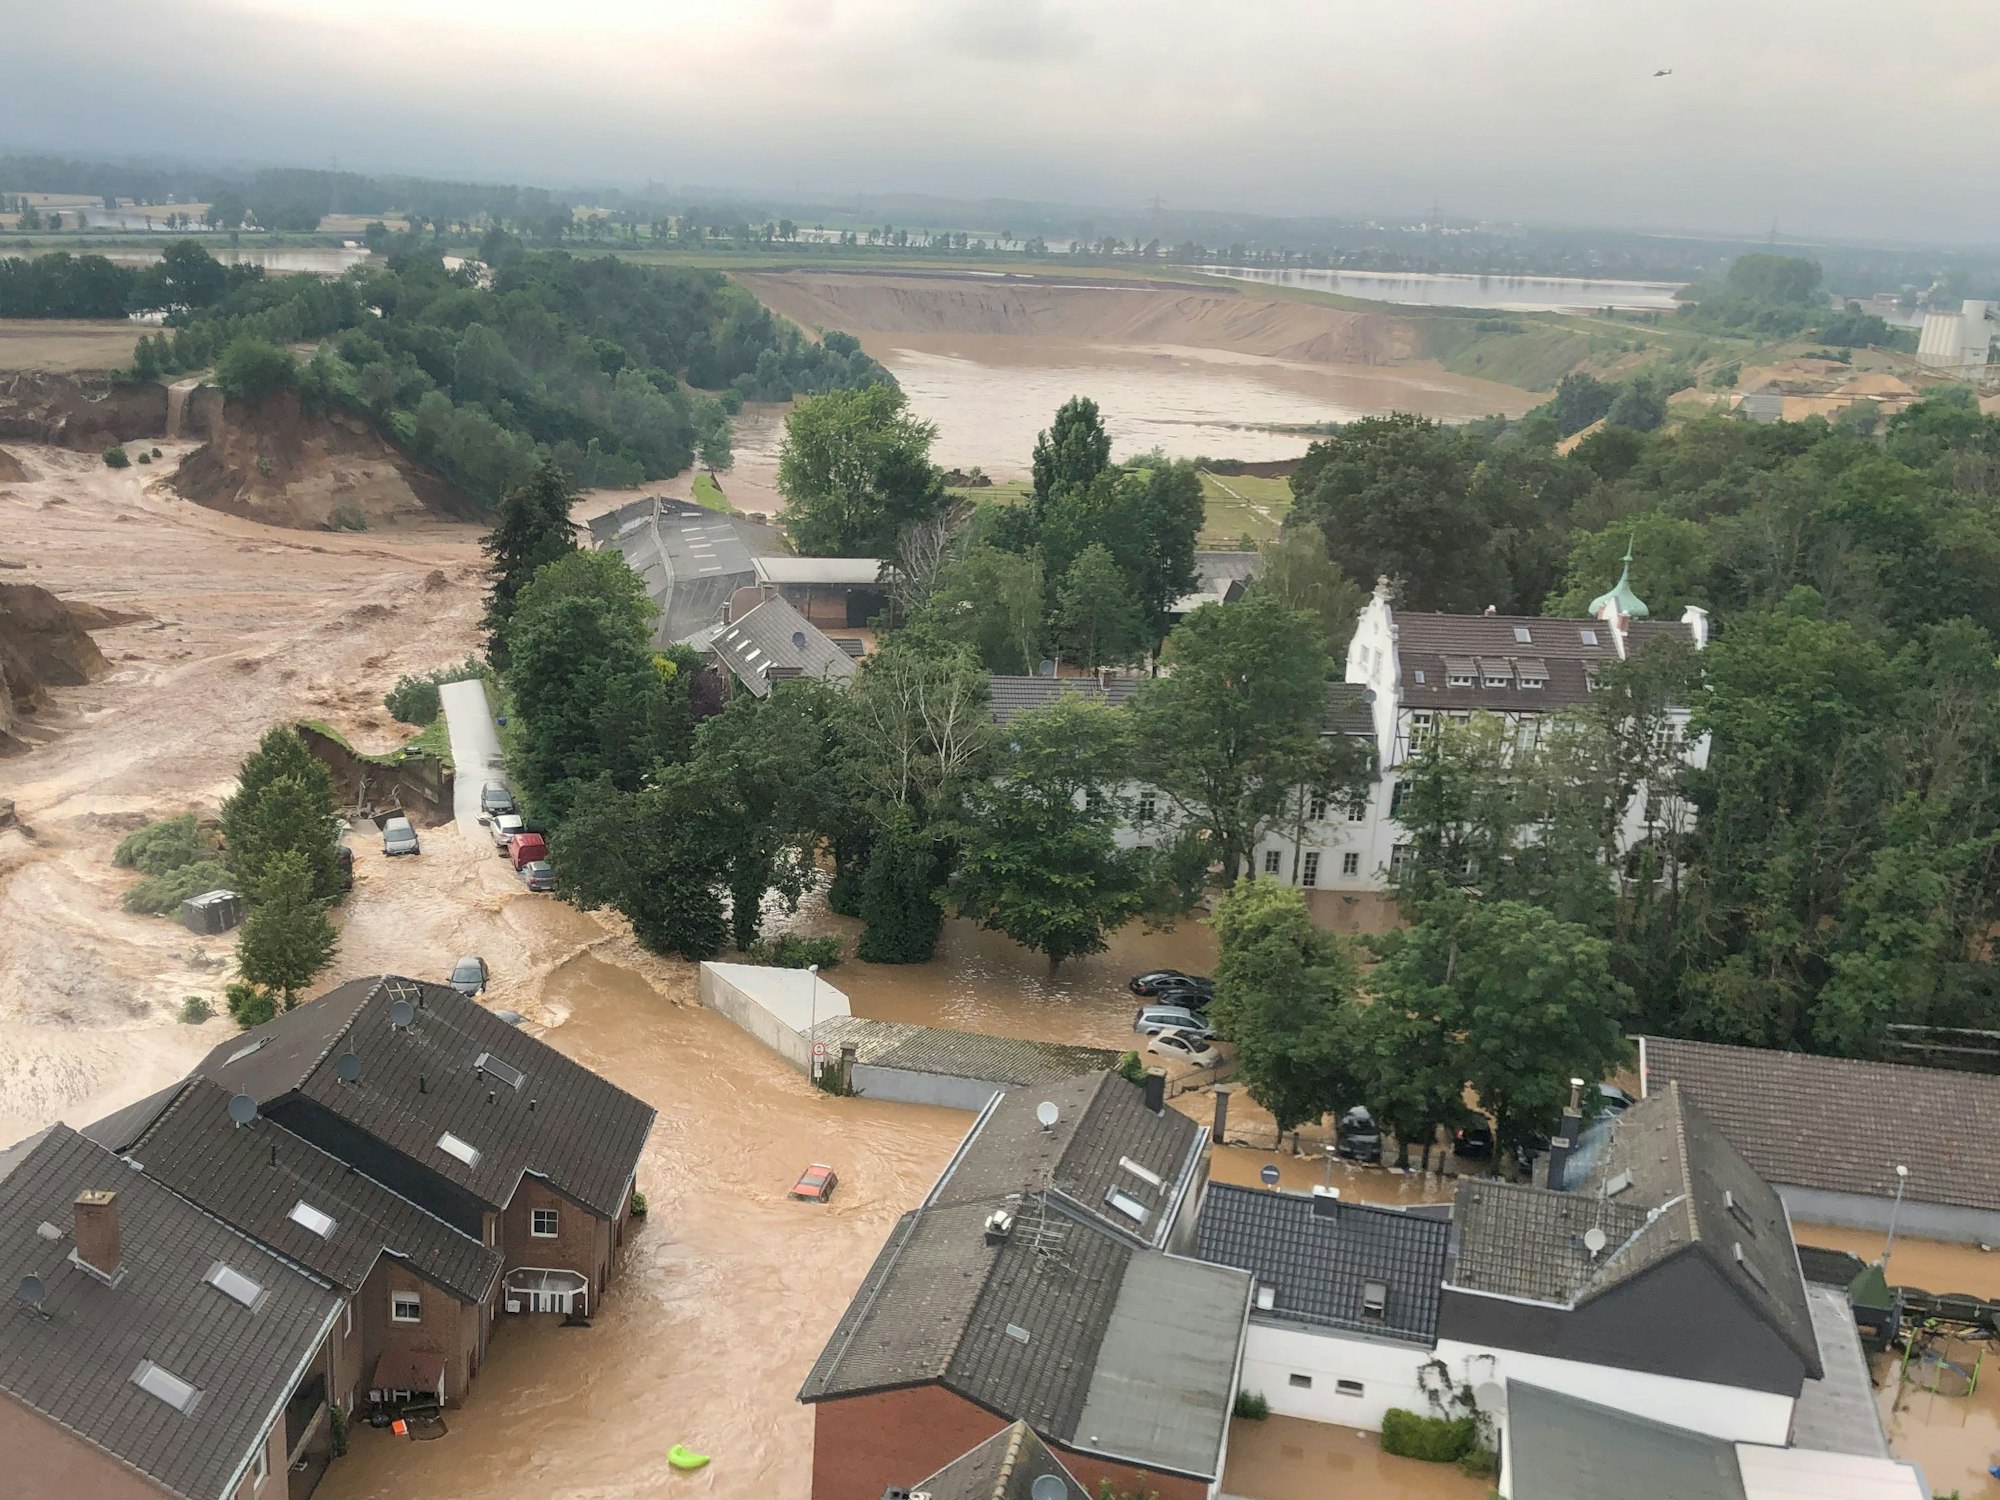 Ein Foto, das die Bezirksregierung Köln am Freitag über Twitter verbreitete, zeigt Überschwemmungen in Erftstadt-Blessem.